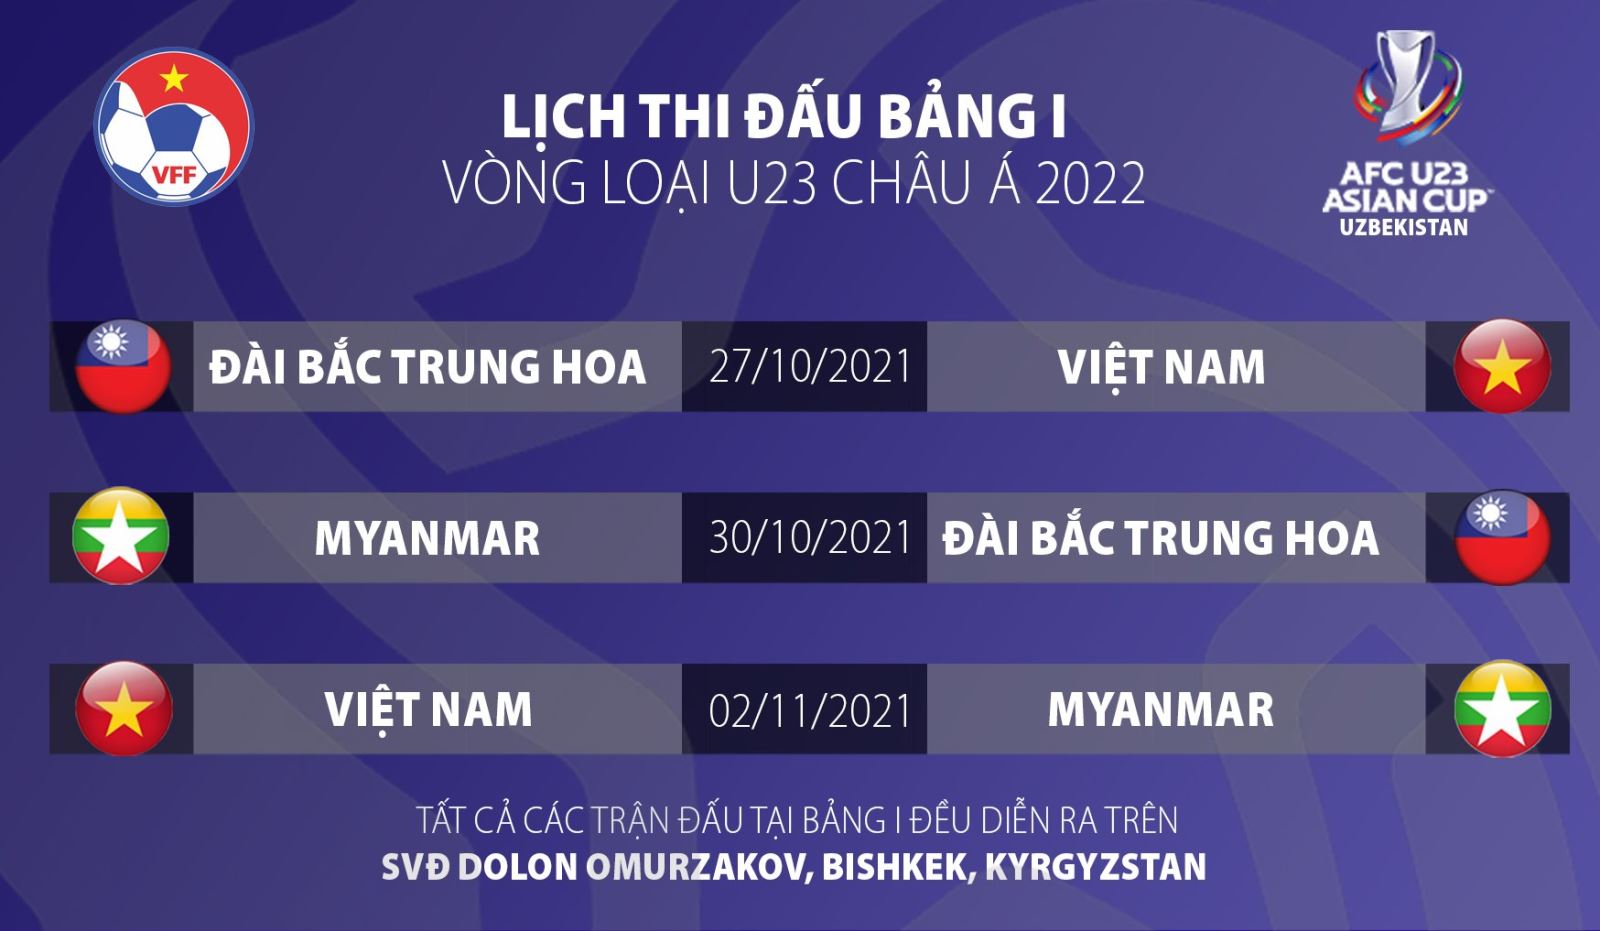 Cúp bóng đá U23 châu Á 2022